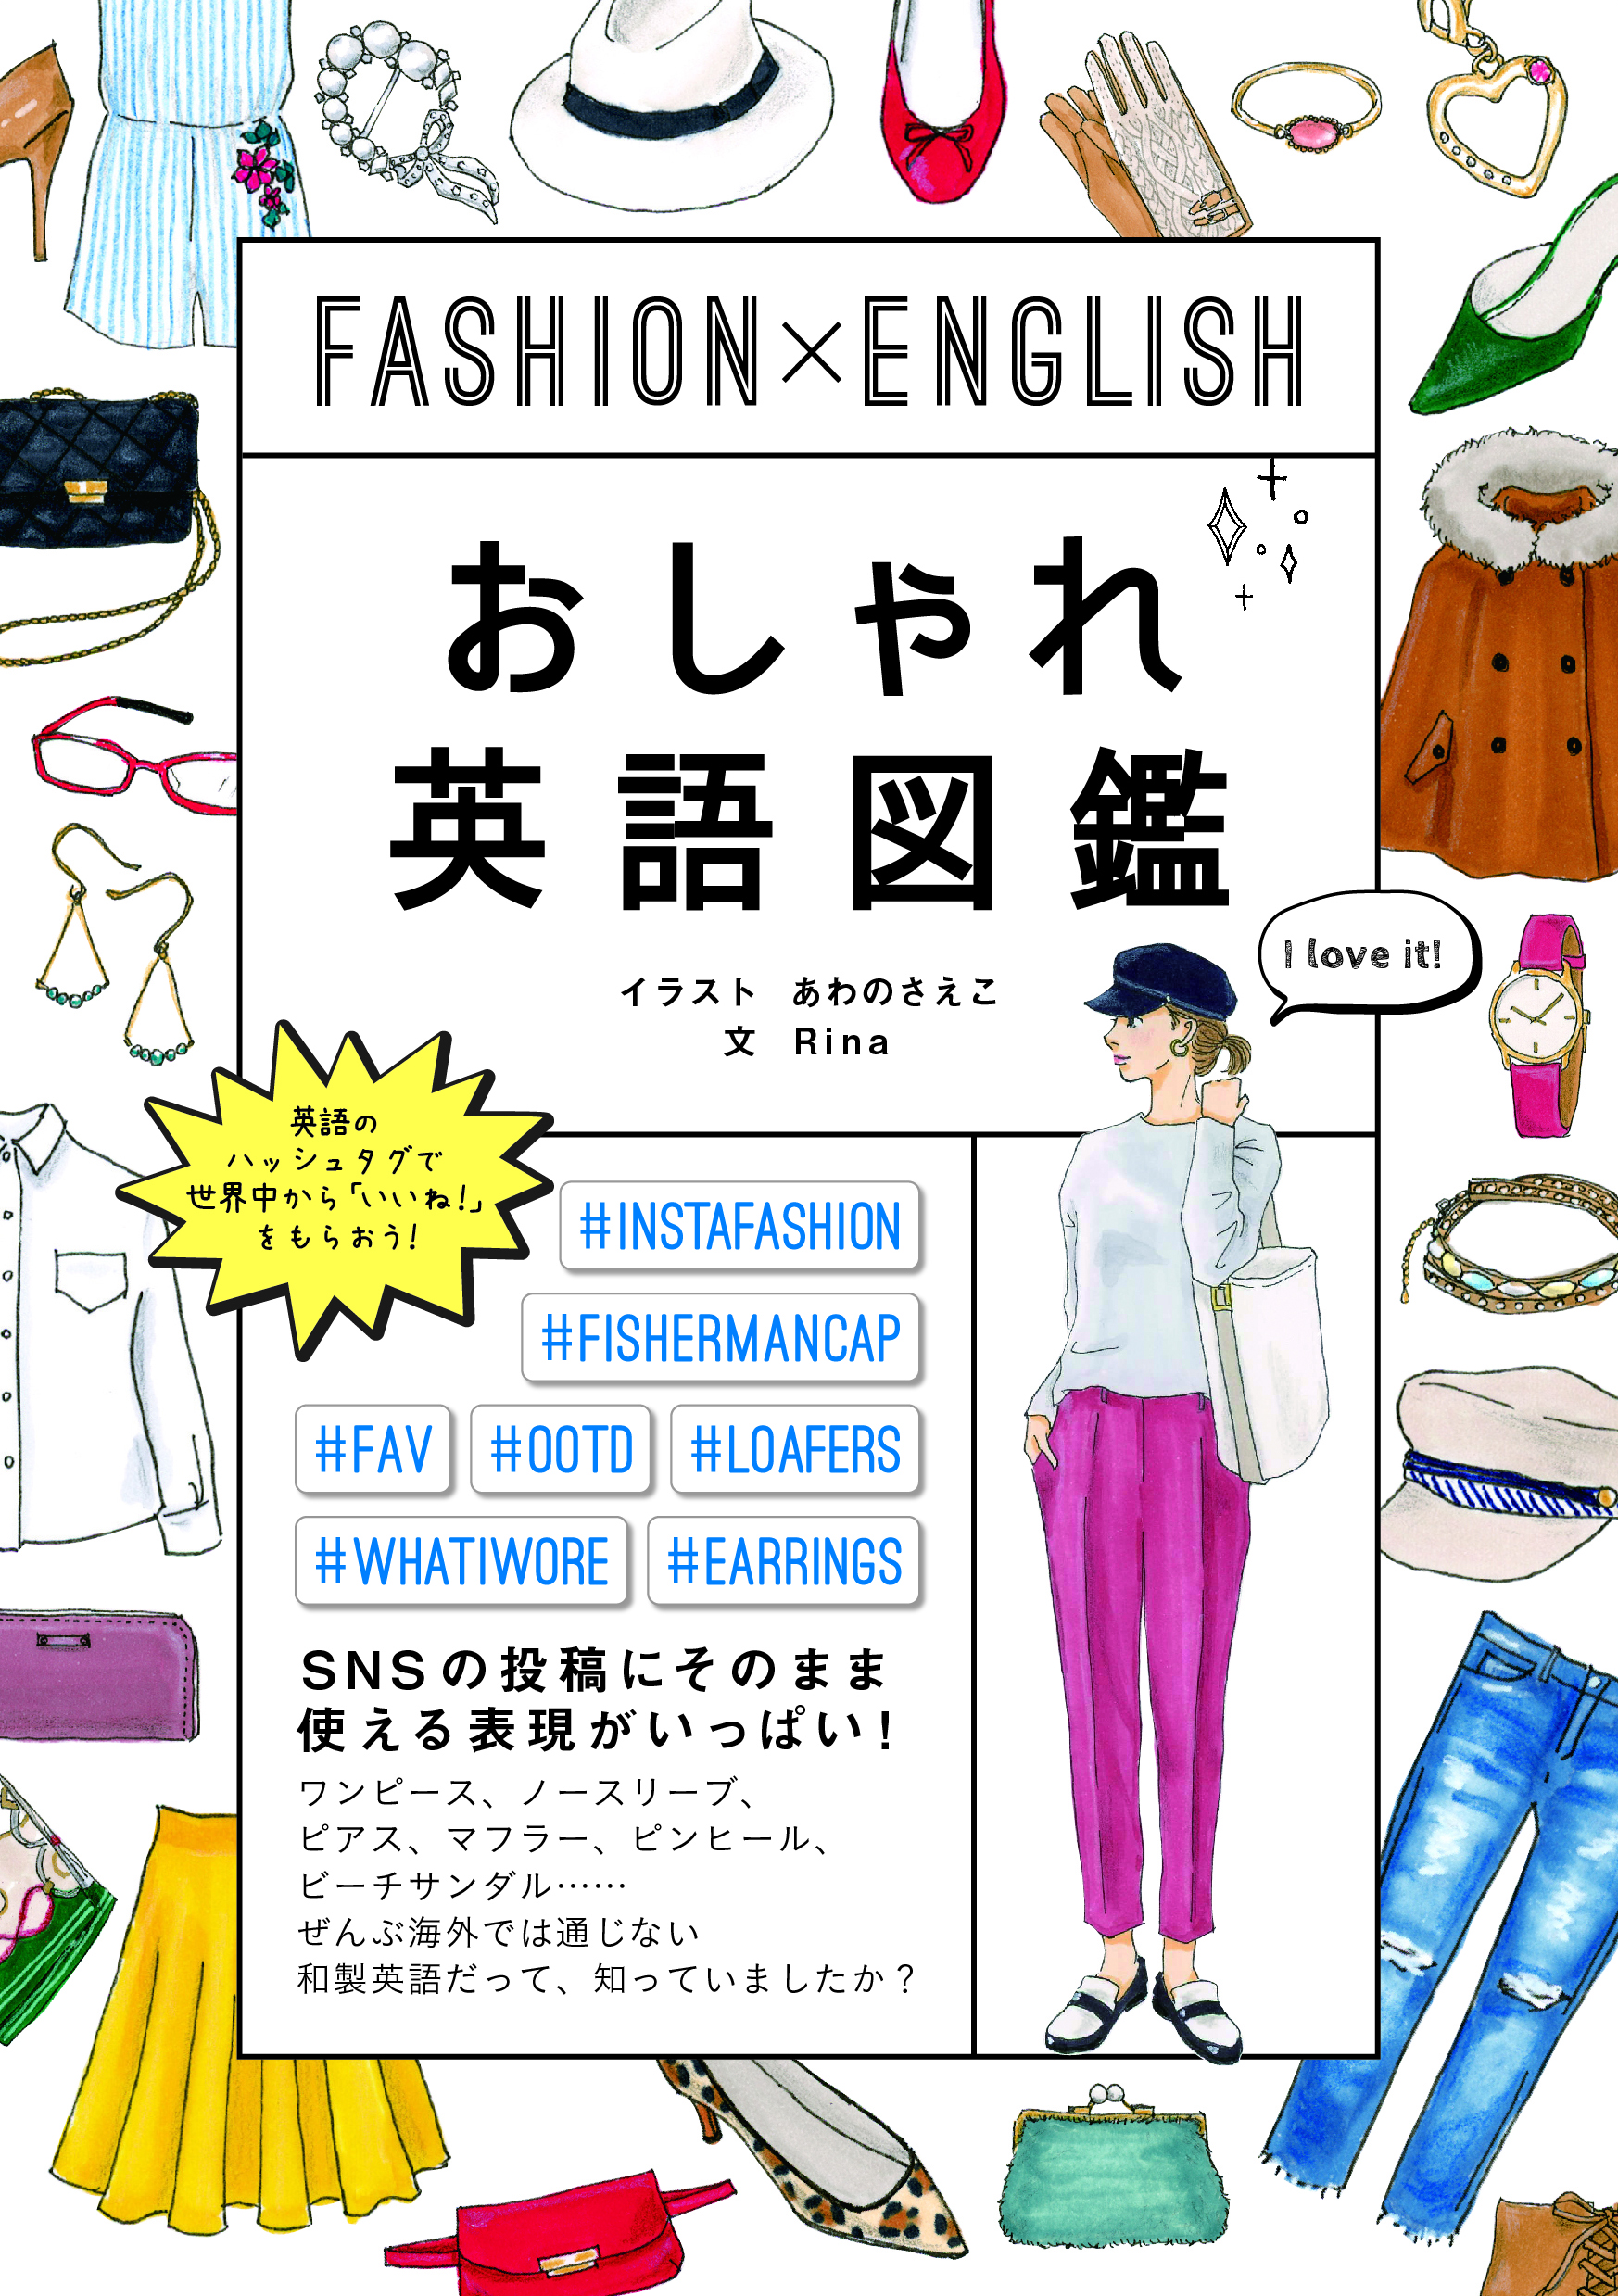 Fashion English おしゃれ英語図鑑 出版書誌データベース